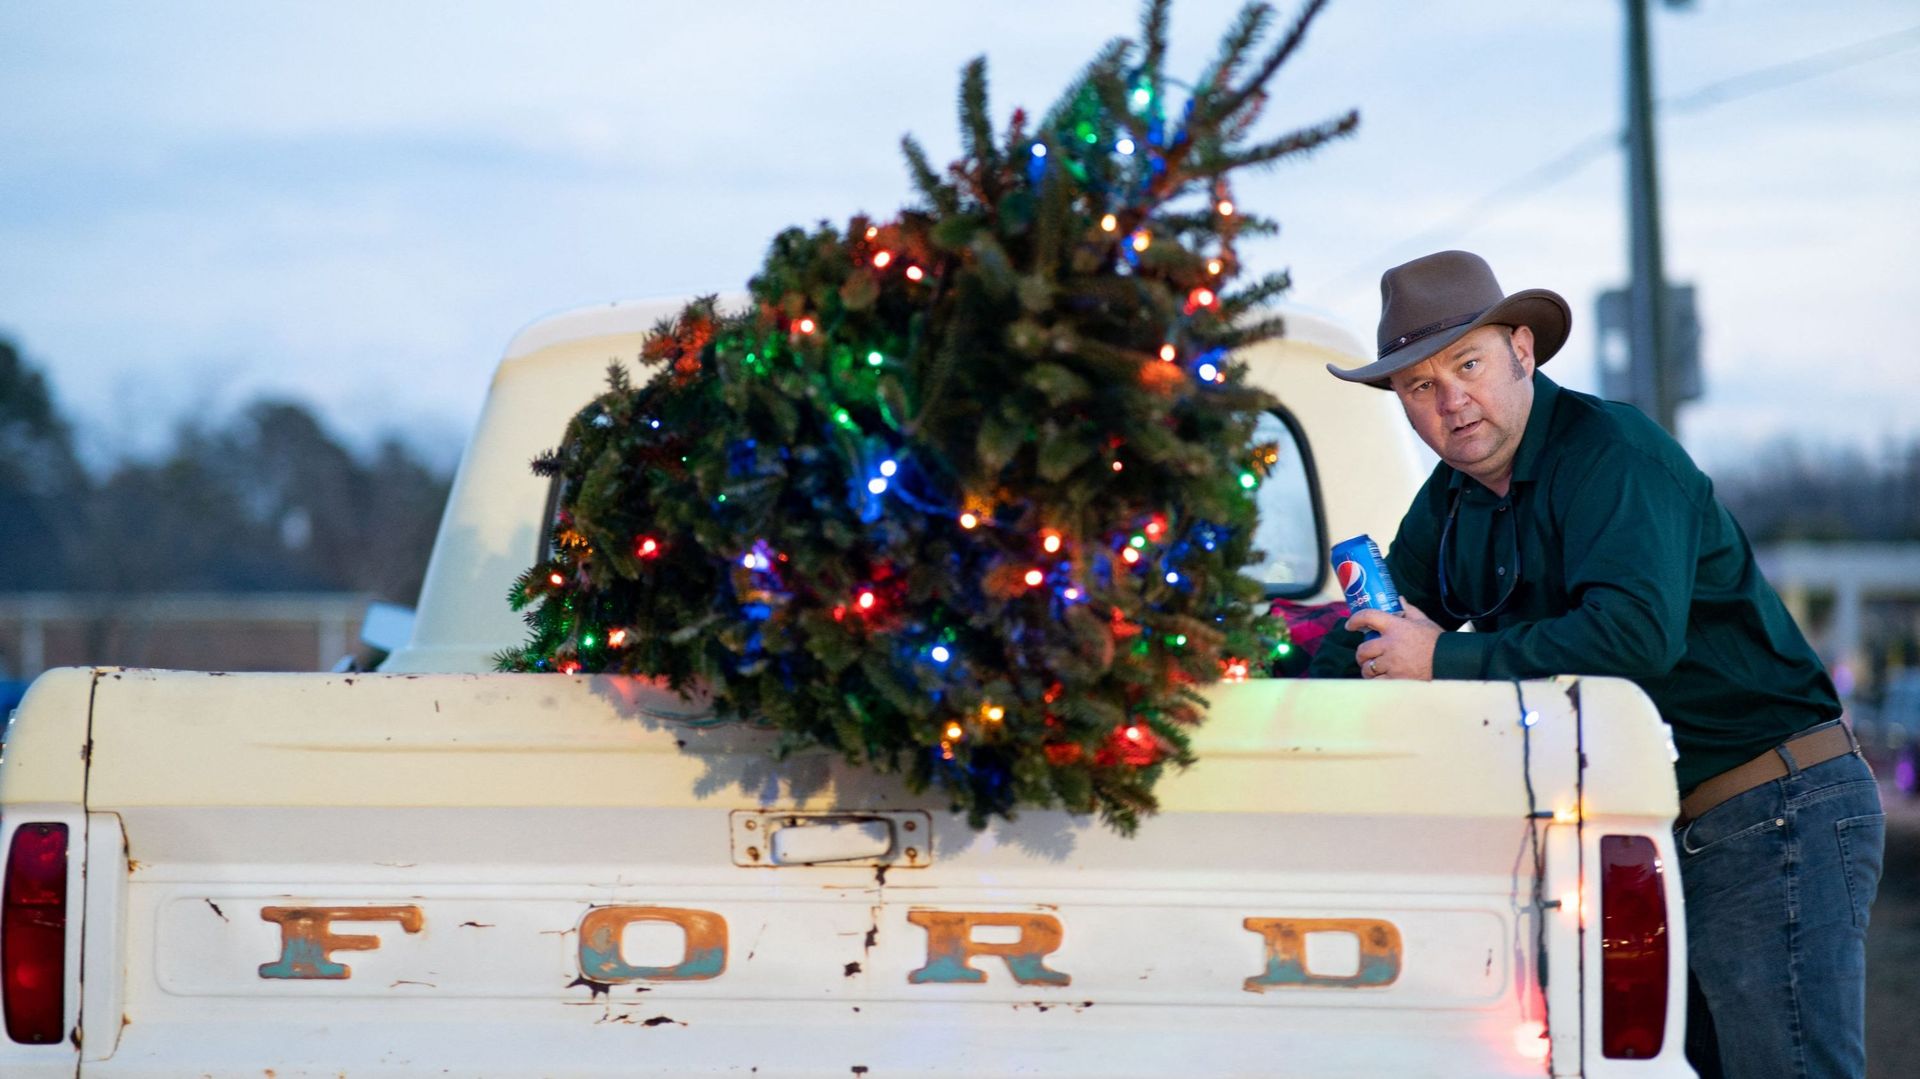 South Carolina Town Lugoff Hosts Christmas Parade